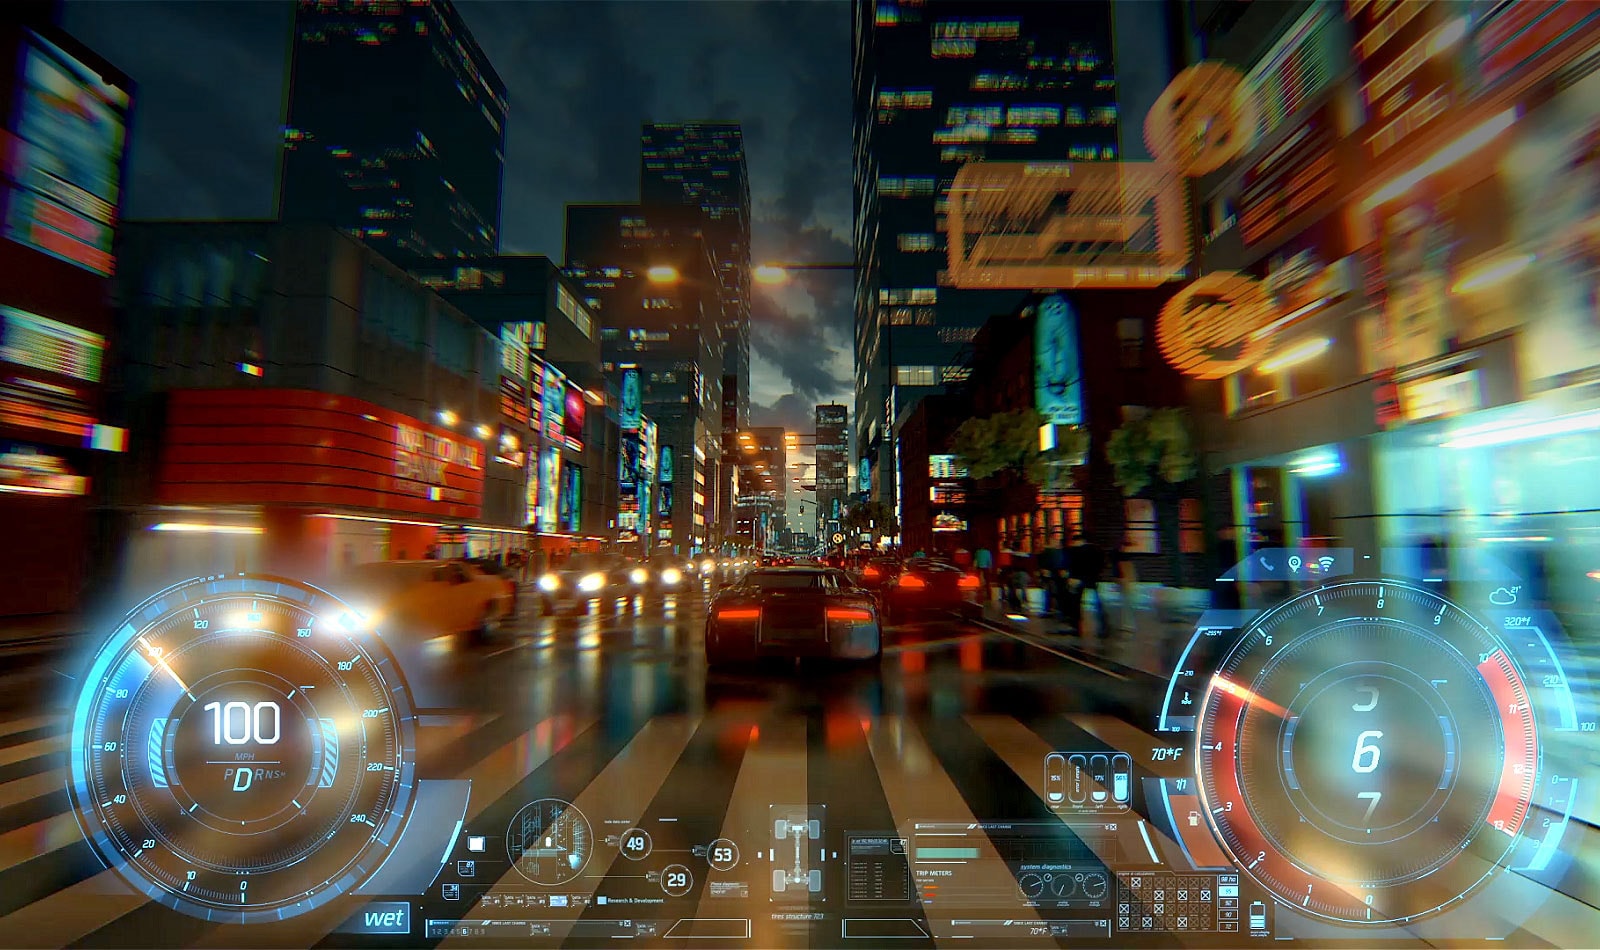 Un videoclip în care este prezentată o mașină din spate într-un joc video, care se deplasează pe o stradă urbană puternic iluminată la amurg.